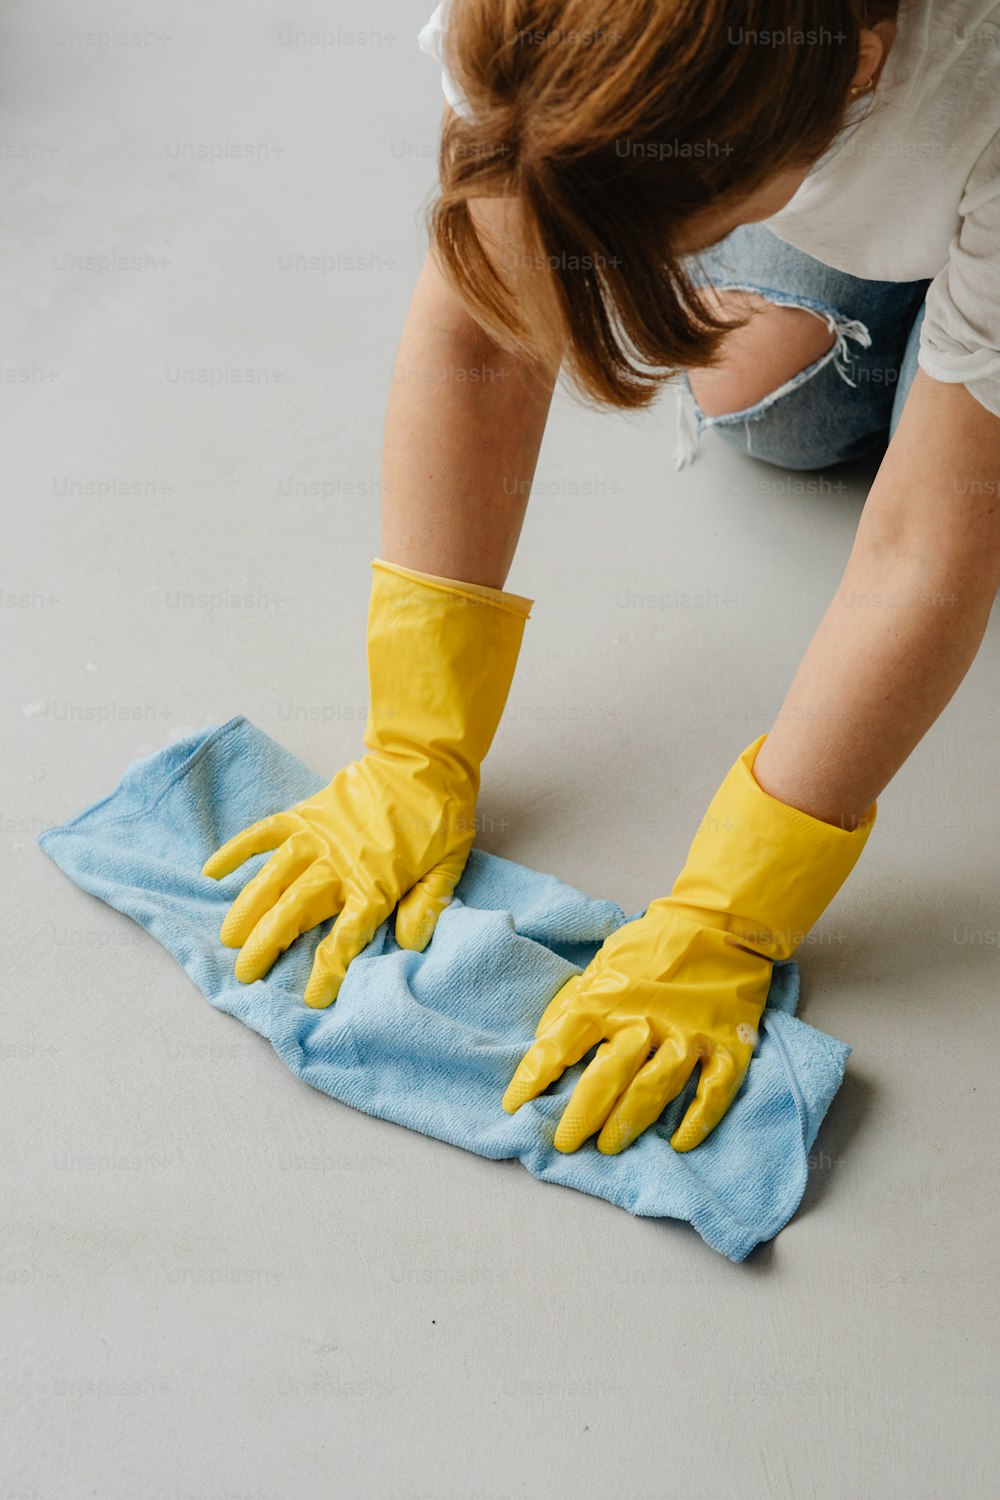 Une femme portant des gants jaunes essuyant une serviette bleue